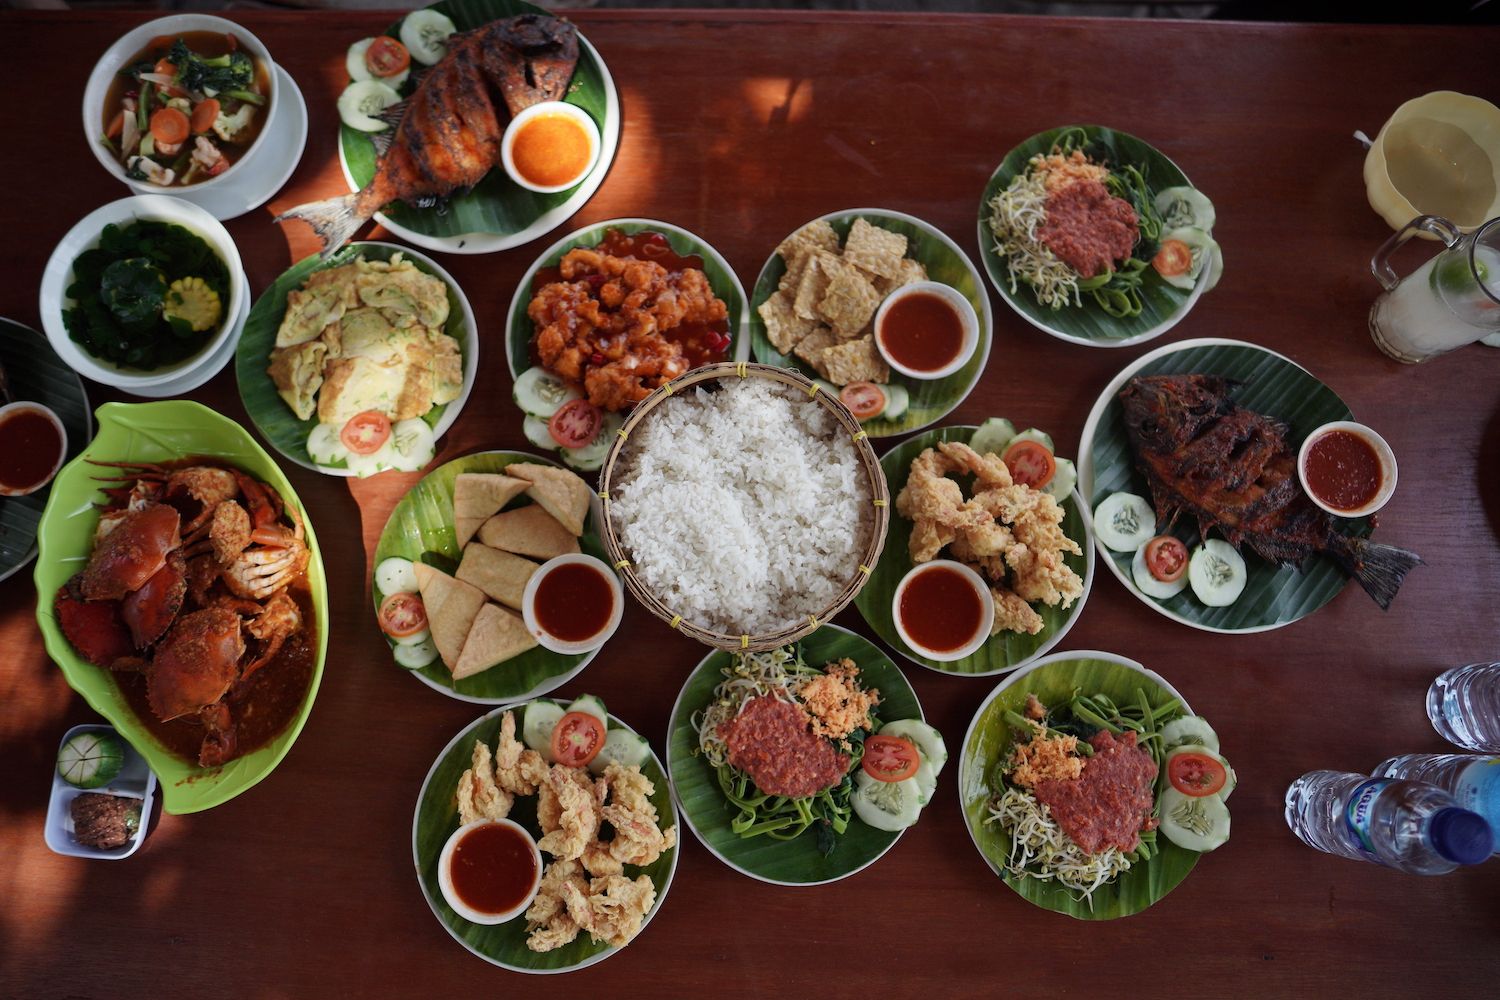 صورة لطاولة خشبية من الأعلى مغطاة بأطباق مختلفة من الطعام الإندونيسي التقليدي.